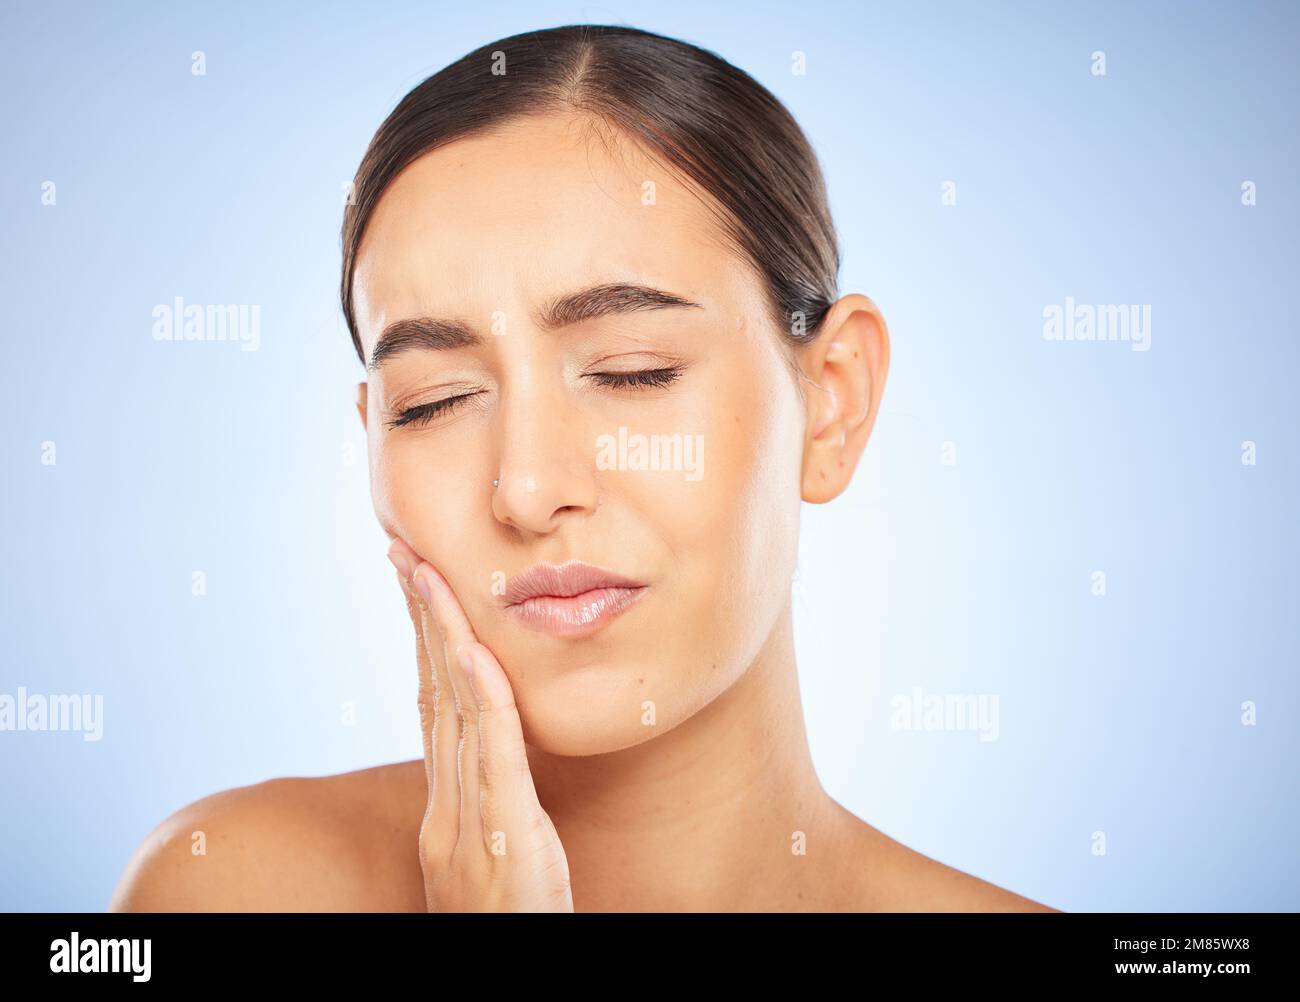 Zahnschmerzen, Schmerzen und Hohlraum mit einer Modellfrau, die ihren Mund im Studio auf blauem Hintergrund für die Mundpflege hält. Zahnhygiene, Plaque und Gesicht mit einem Stockfoto